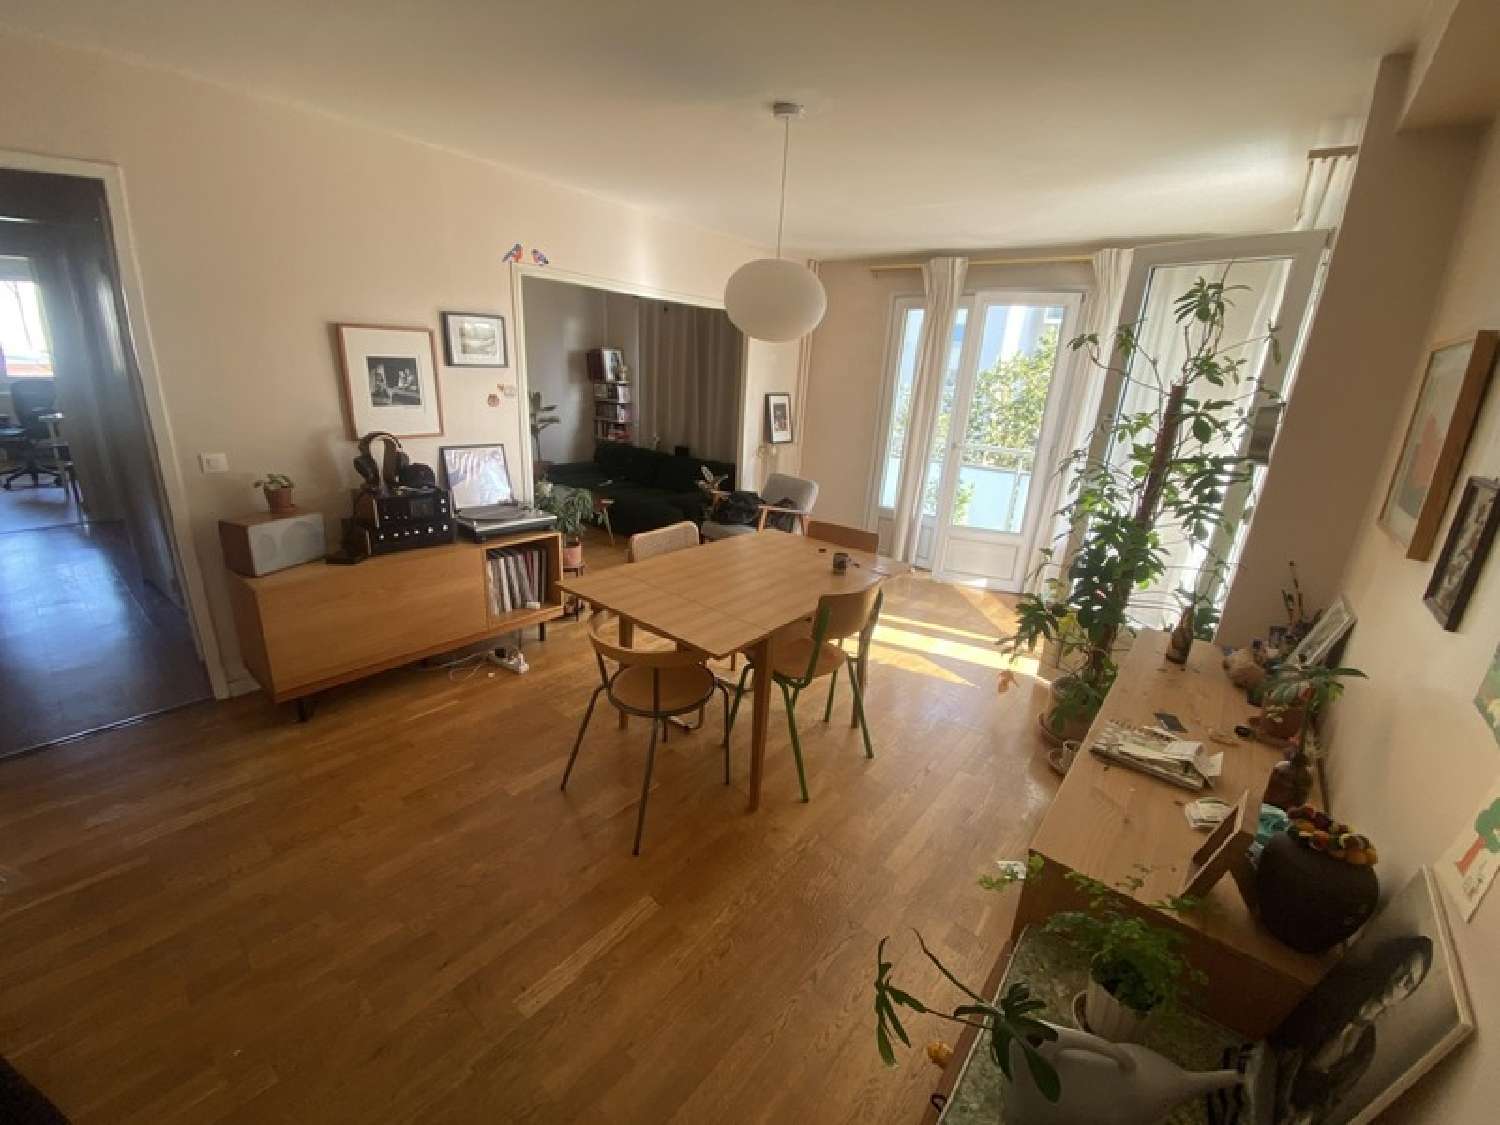  for sale apartment Montrouge Hauts-de-Seine 1